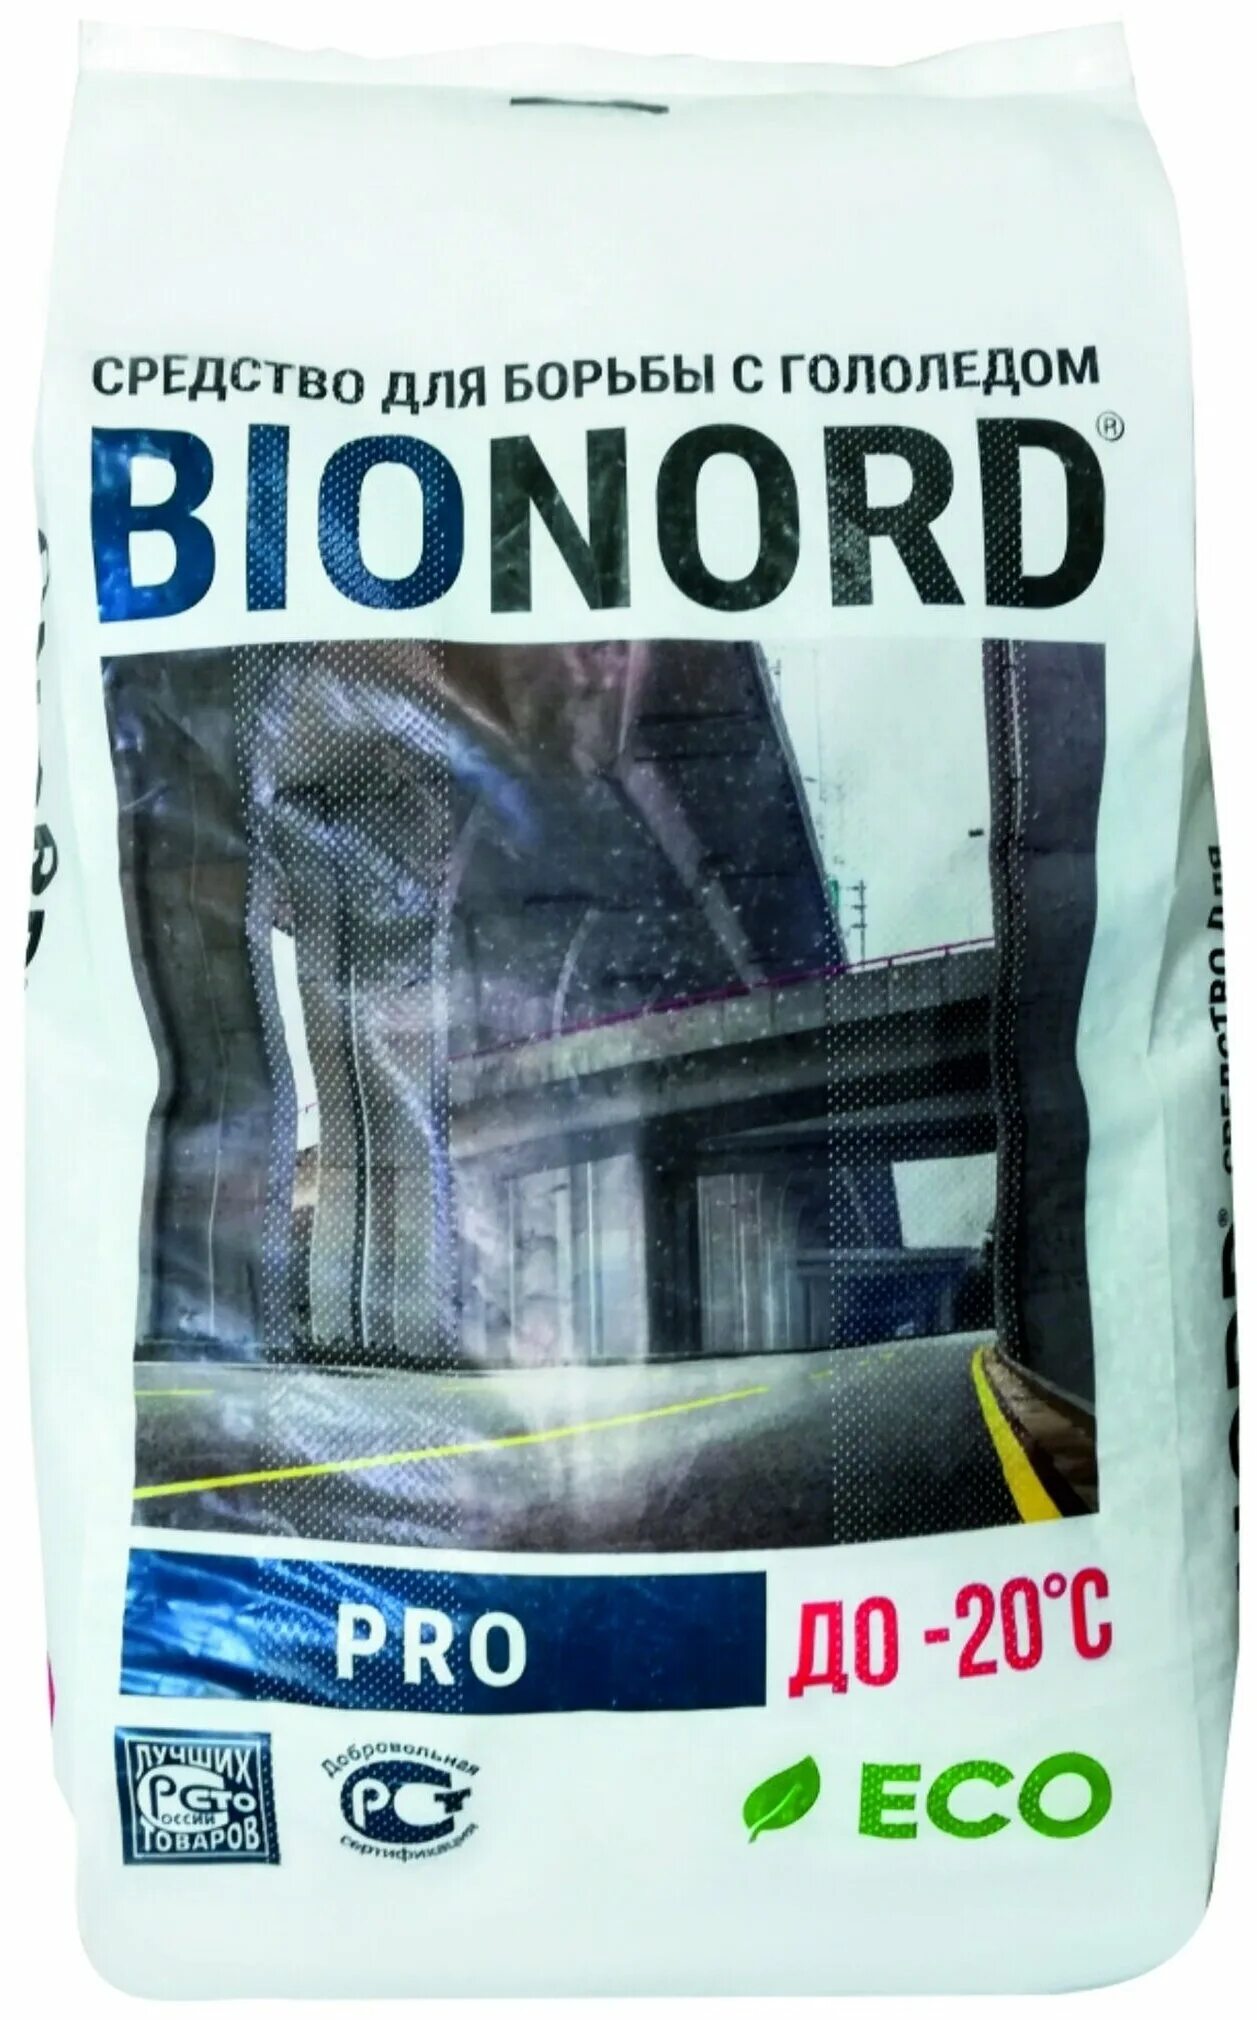 Реагент бионорд. Бионорд 23кг. Антилед "Бионорд Pro Plus" -20. Бионорд реагент. Реагент Бионорд в мешках..